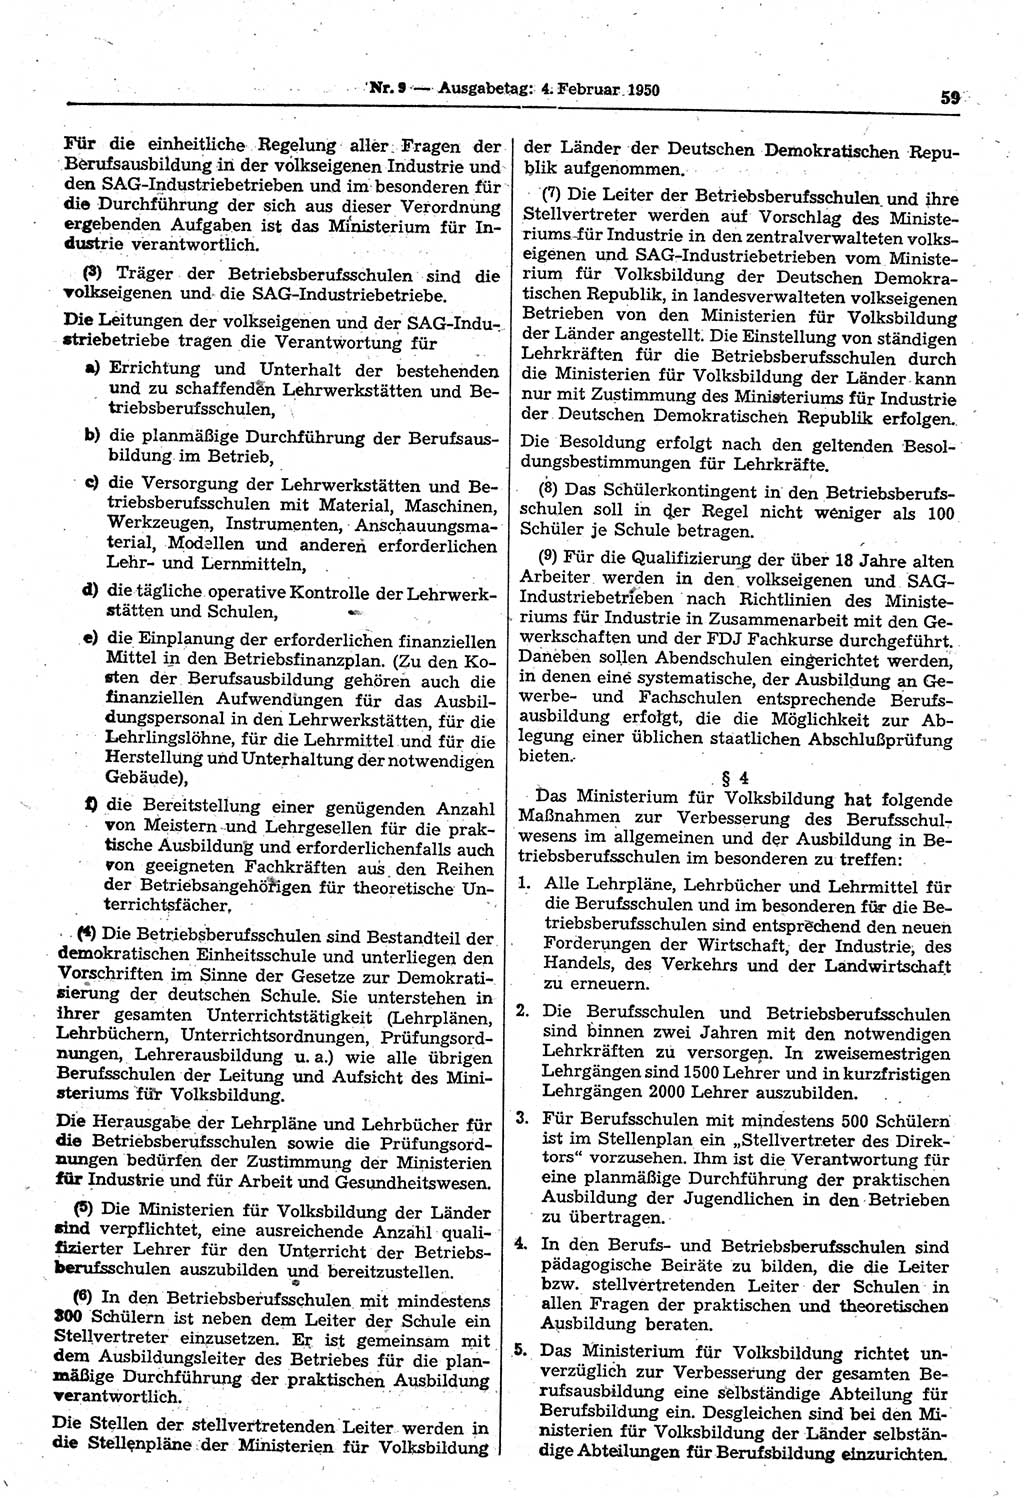 Gesetzblatt (GBl.) der Deutschen Demokratischen Republik (DDR) 1950, Seite 59 (GBl. DDR 1950, S. 59)